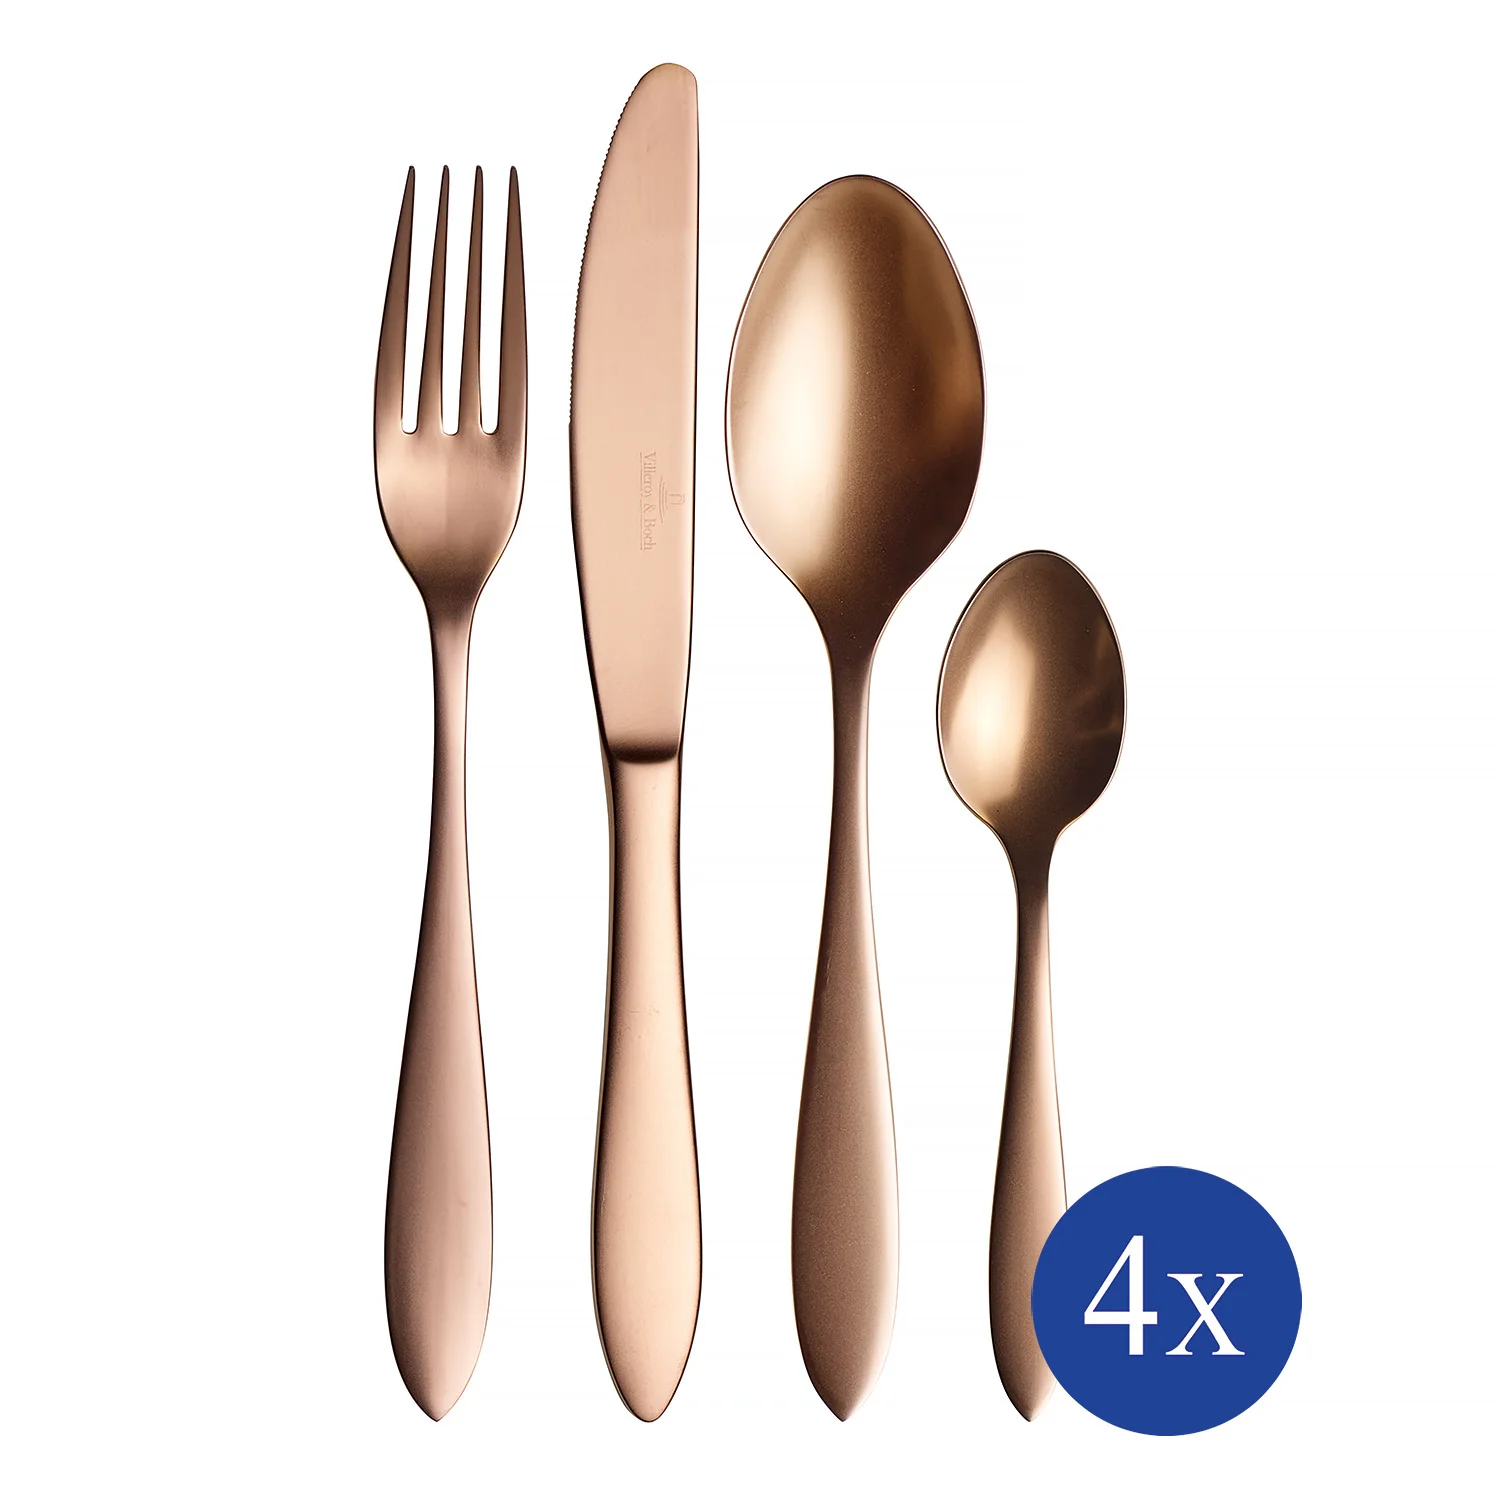 Manufacture Cutlery Набор столовых приборов на 4 персоны, 16 предметов